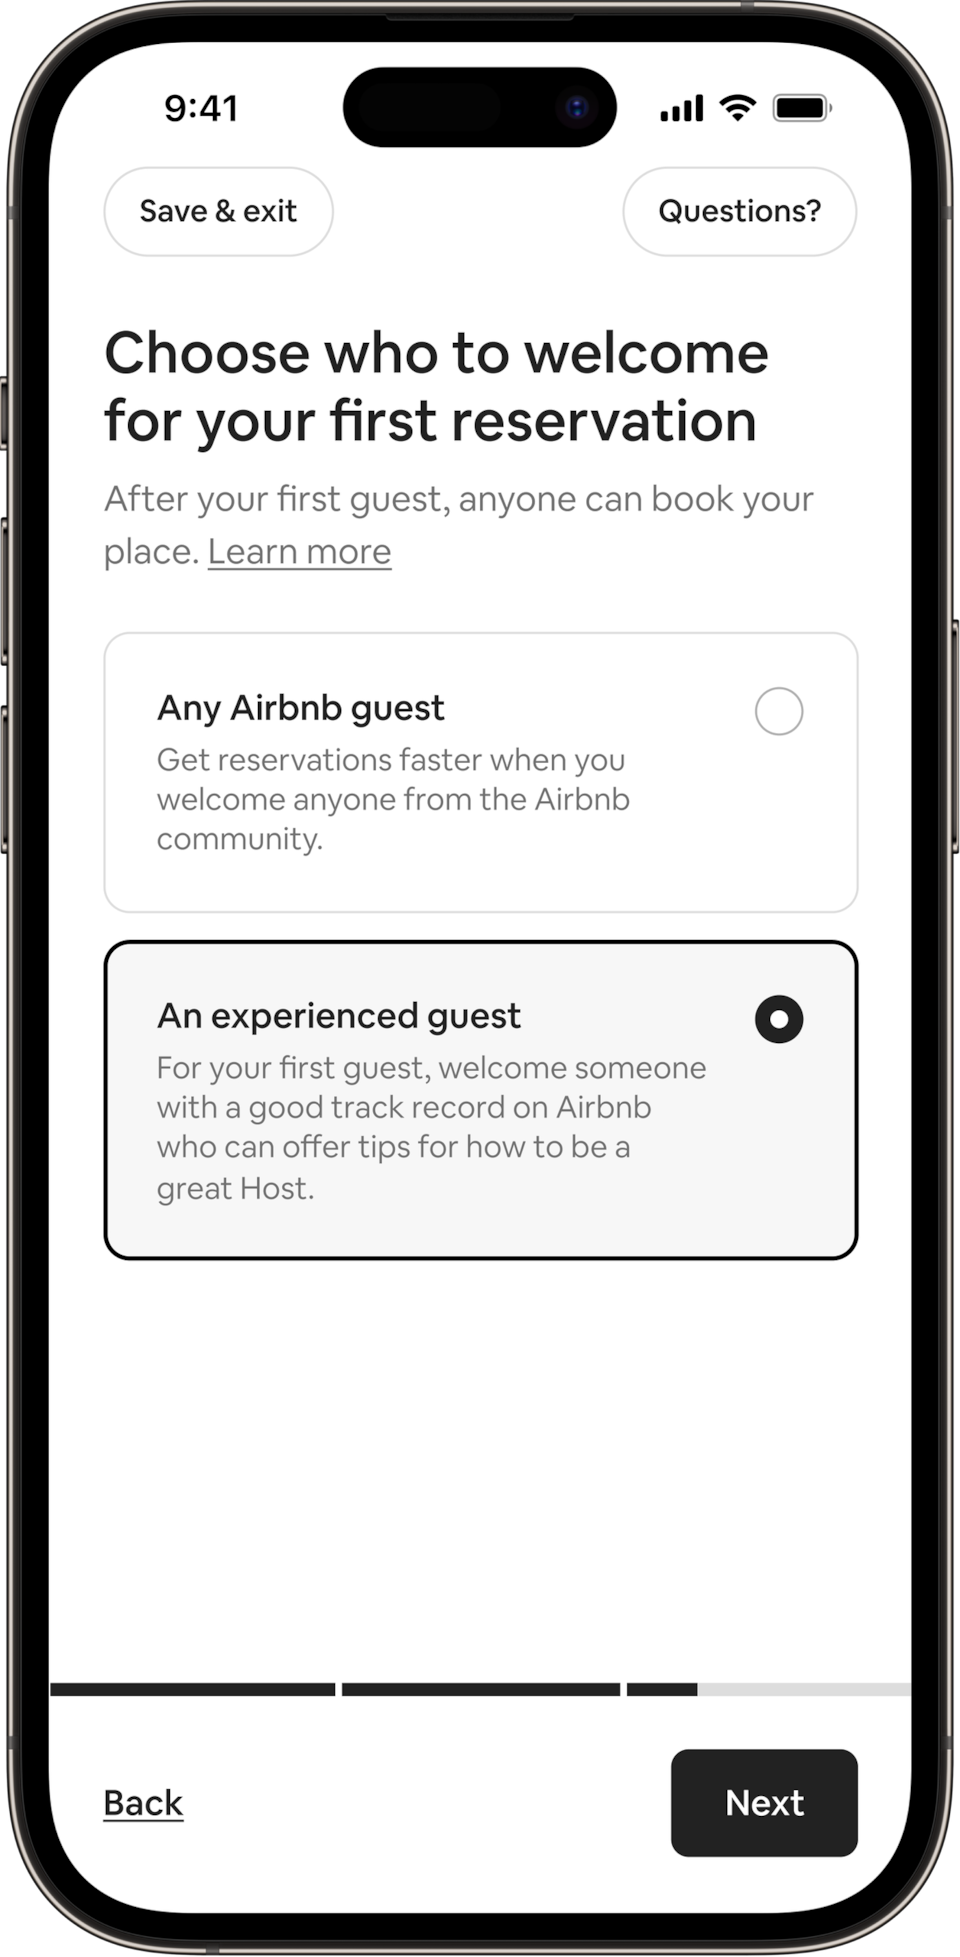 फ़ोन पर दिखाई दे रहे इस टाइटल में लिखा है : यह चुनें कि अपने पहले रिज़र्वेशन में आप किसकी मेज़बानी करना चाहेंगे। मेज़बान अगर चाहें तो Airbnb के किसी भी मेहमान का स्वागत कर सकते हैं या फिर वे किसी अनुभवी मेहमान की मेज़बानी करने का विकल्प चुन सकते हैं। अनुभवी मेहमान वाला बटन चुना गया है।